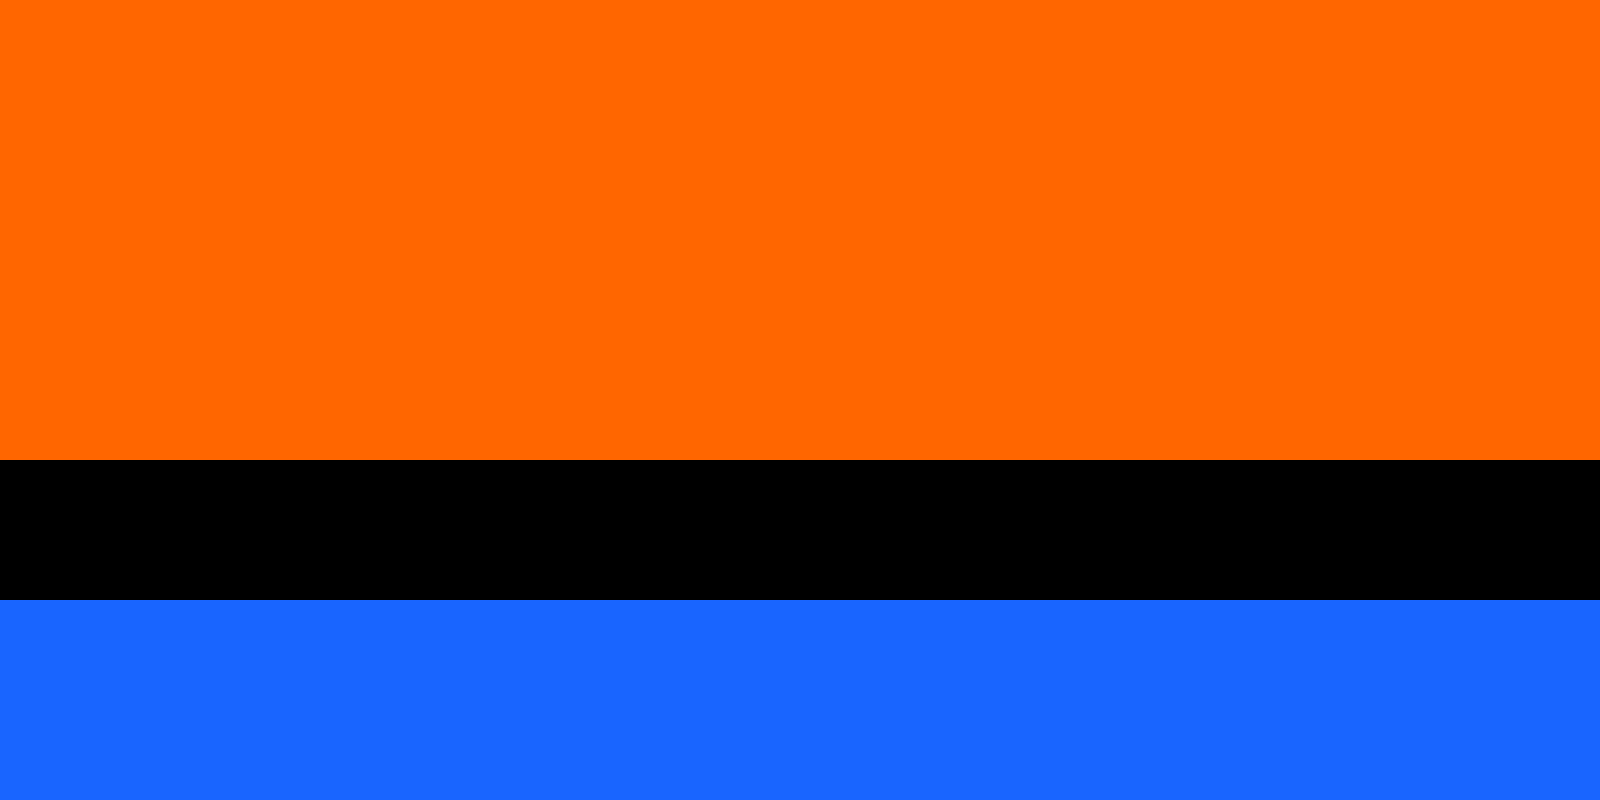 Флаг синий оранжевый желтый. Чагос флаг. Флаг арх. Чагос. Черно оранжевый флаг. Флаг черный оранжевый синий.